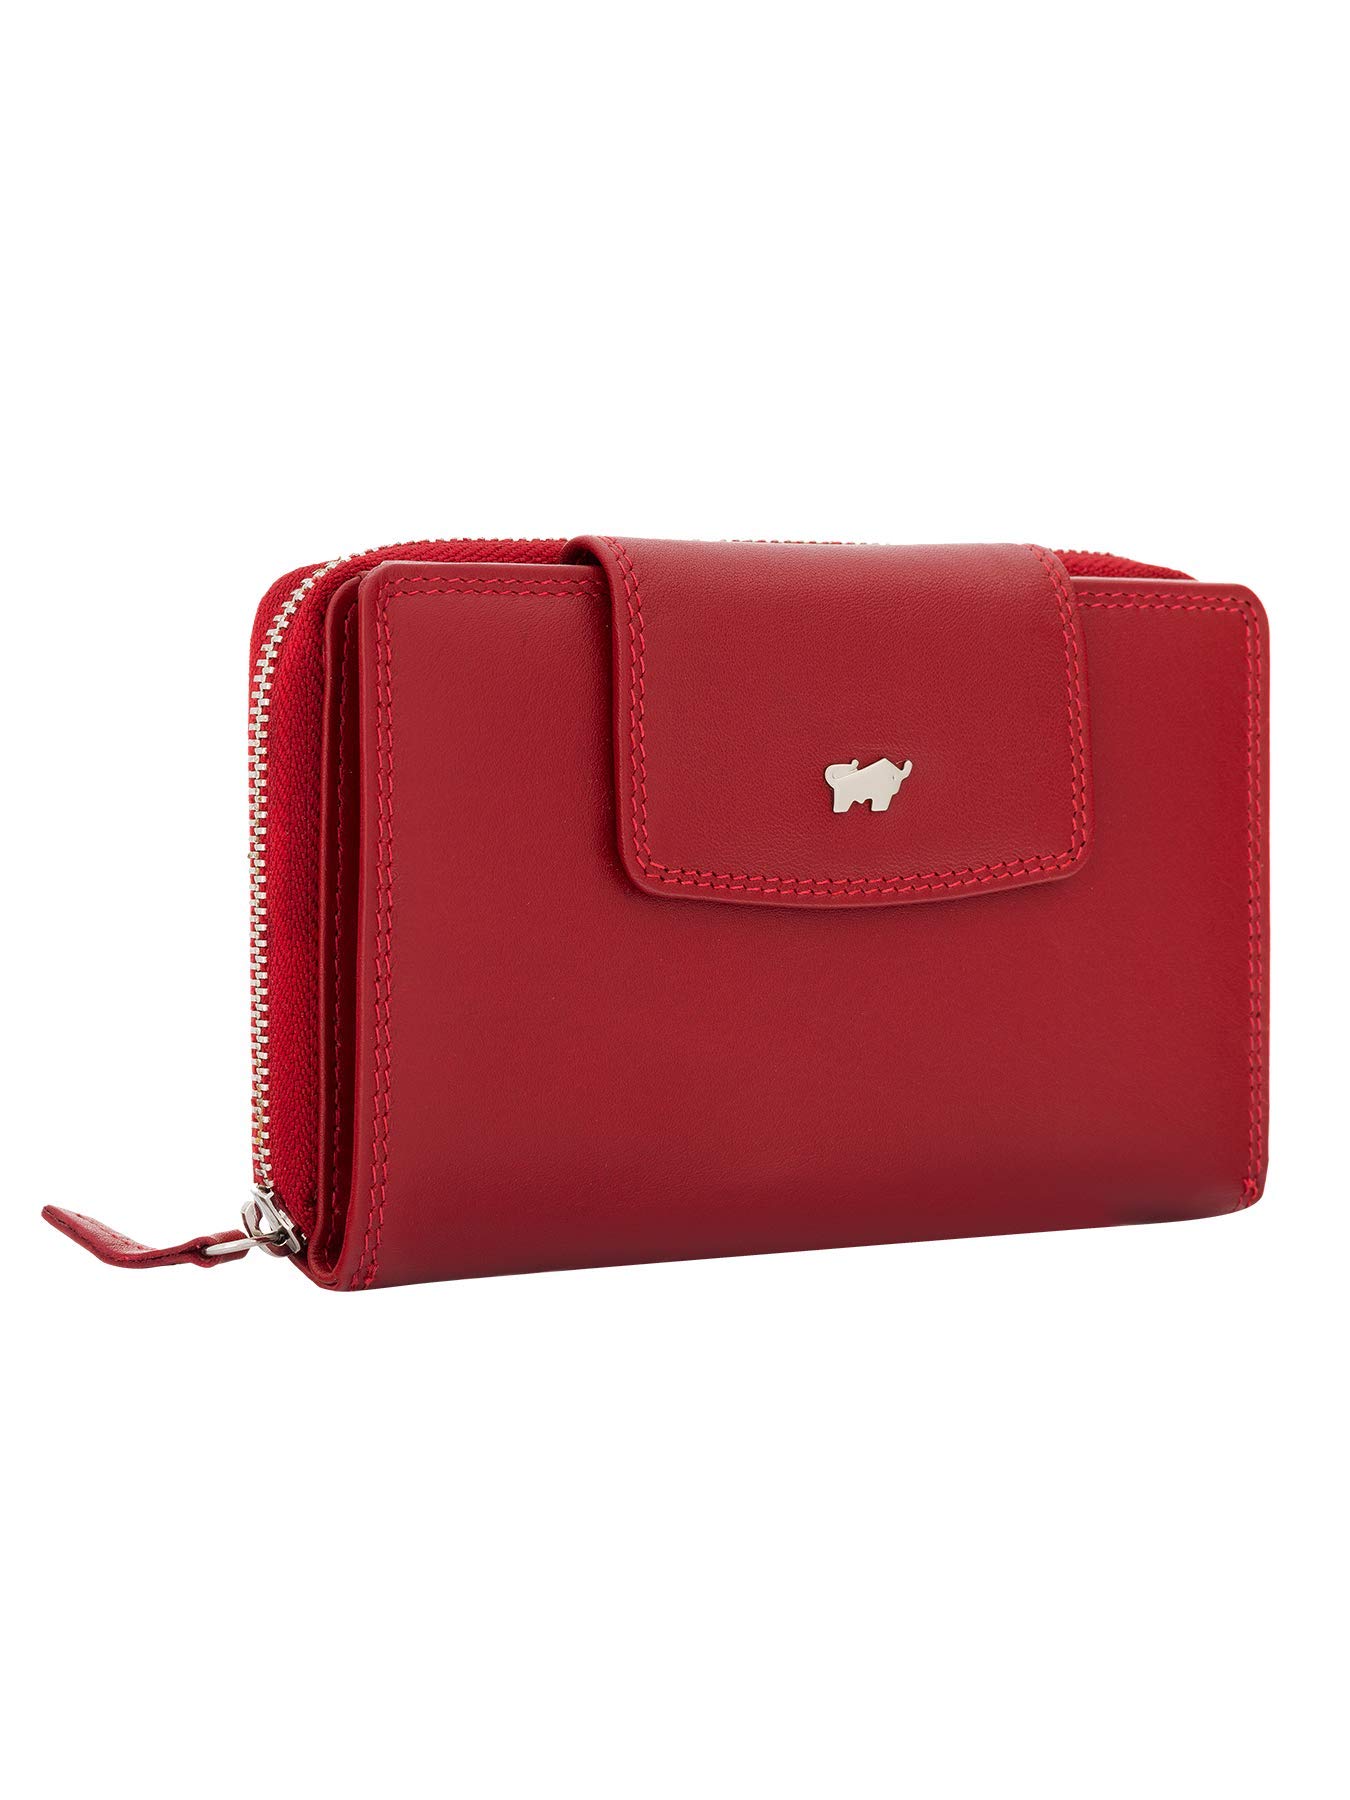 BRAUN BÜFFEL Damen Geldbörse aus echtem Leder Golf 2.0 - mit Reißverschluss - Portemonnaie für Frauen - 15 Kartenfächer - Rot